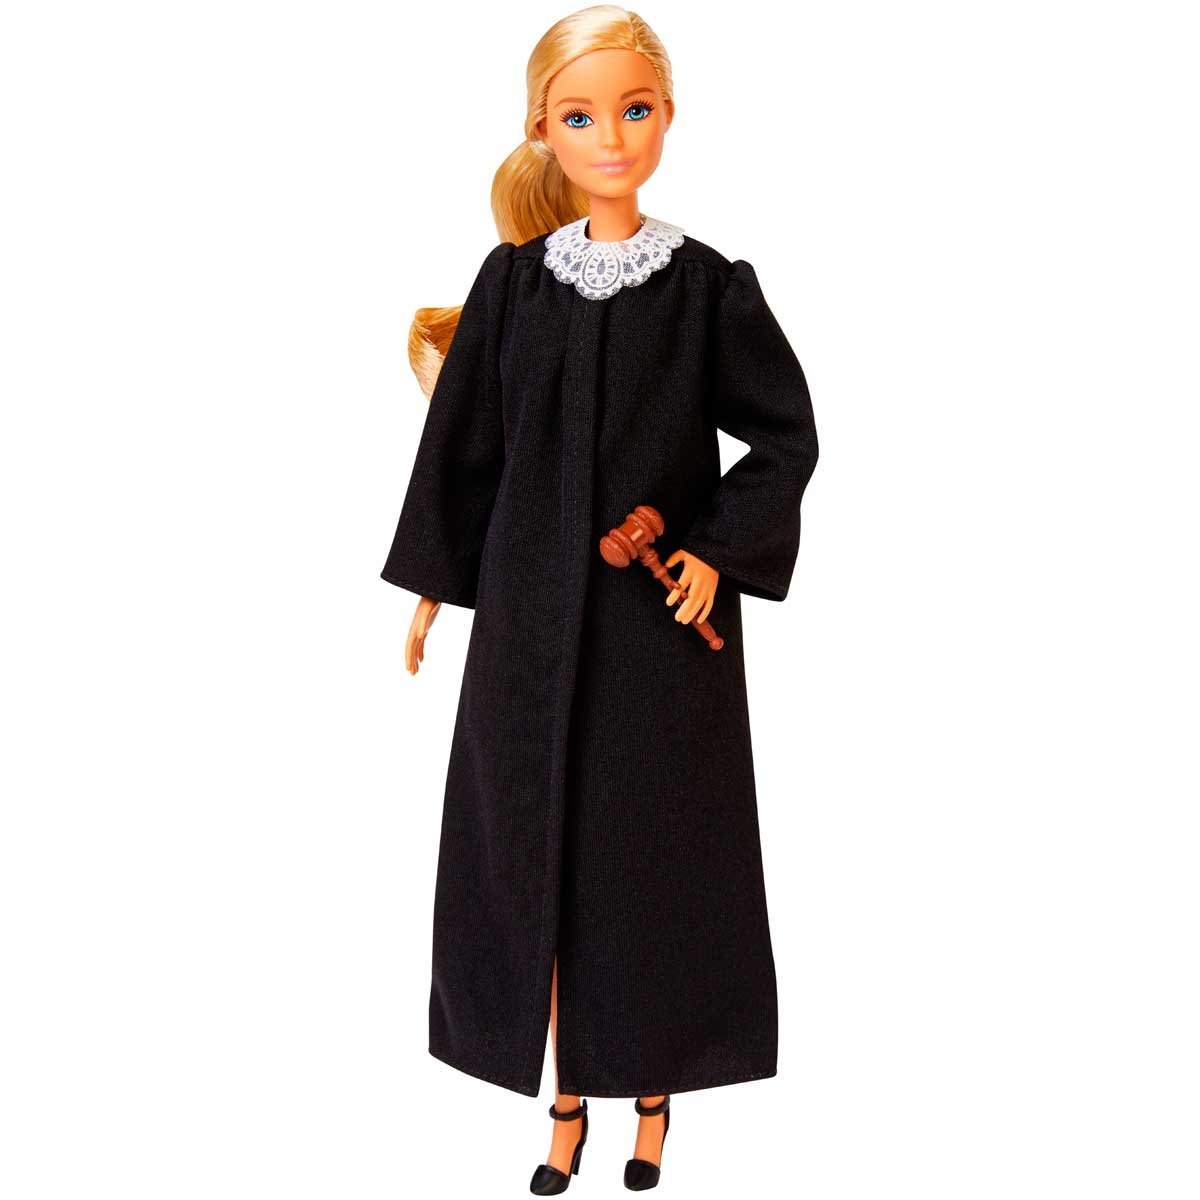 Barbie Profesiones Profesi&oacute;n Del A&ntilde;o Jueza Mattel